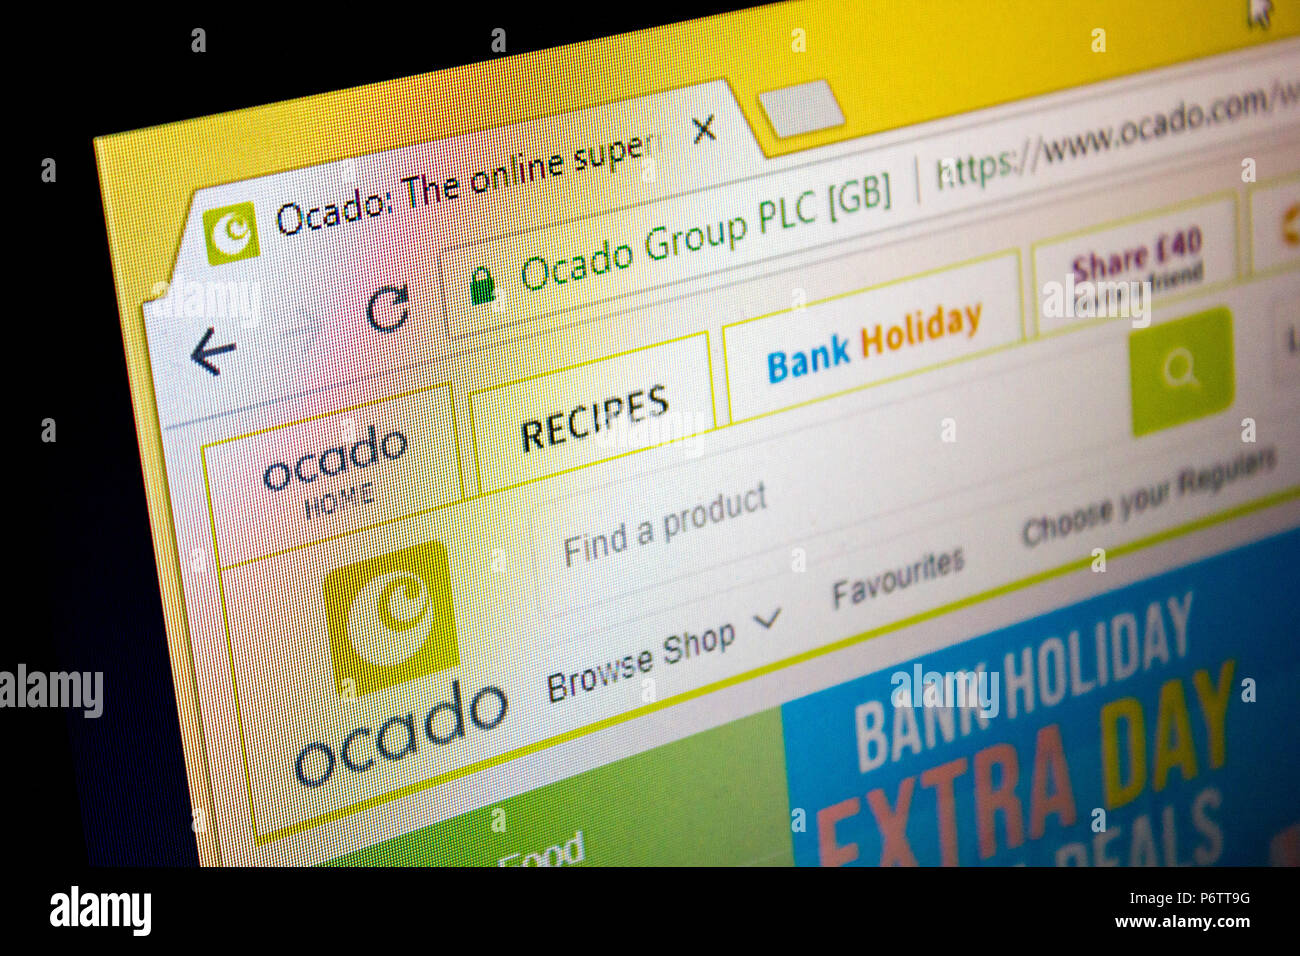 Site Web, Ocado, supermarché en ligne Banque D'Images